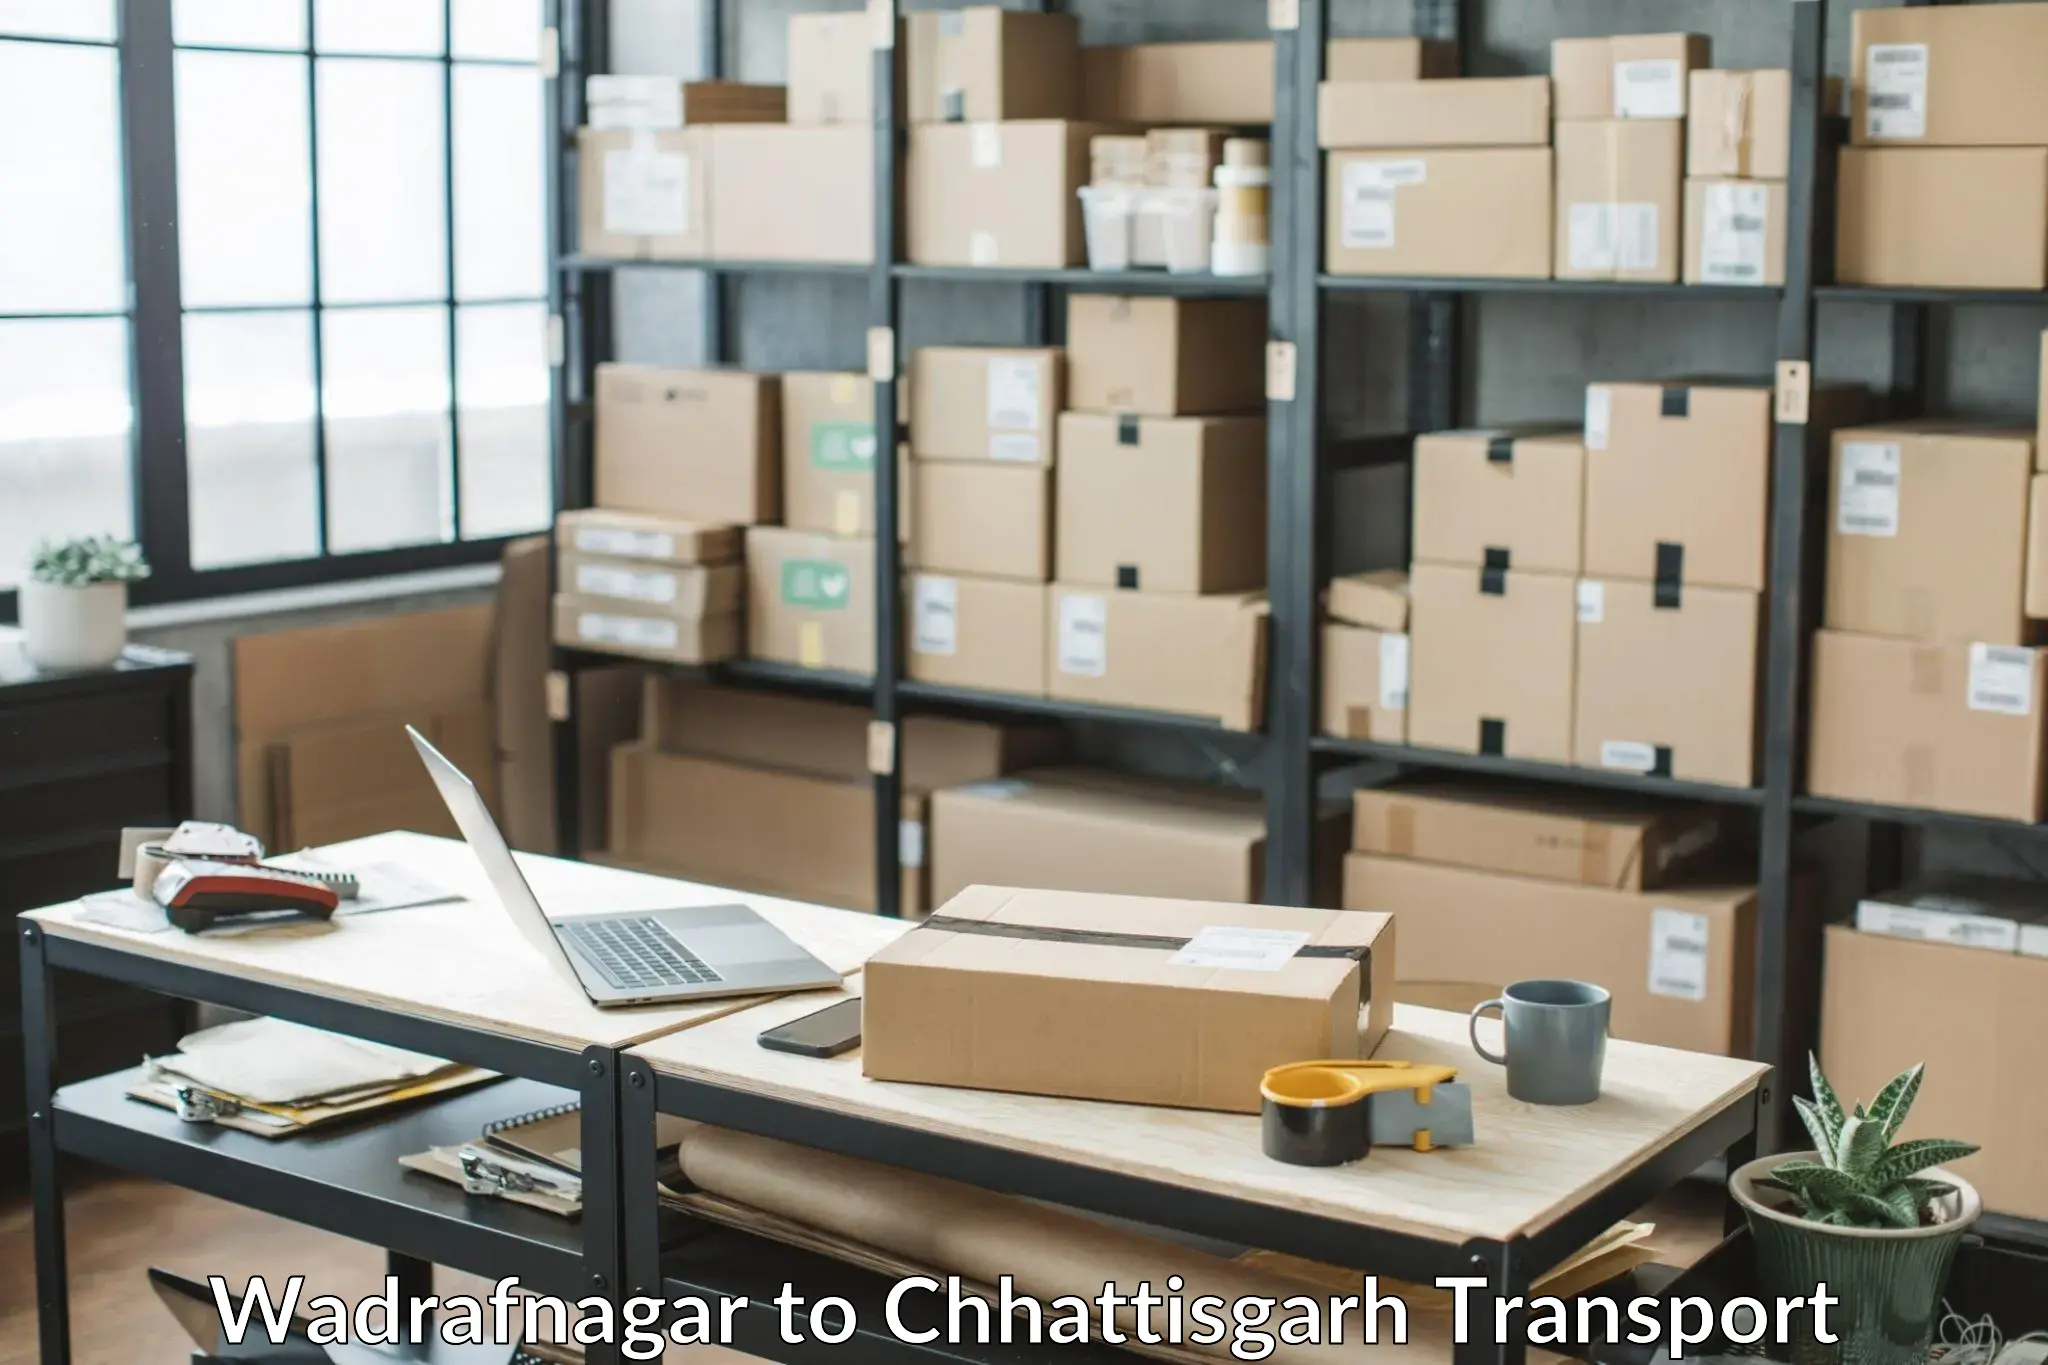 Goods delivery service Wadrafnagar to Bijapur Chhattisgarh